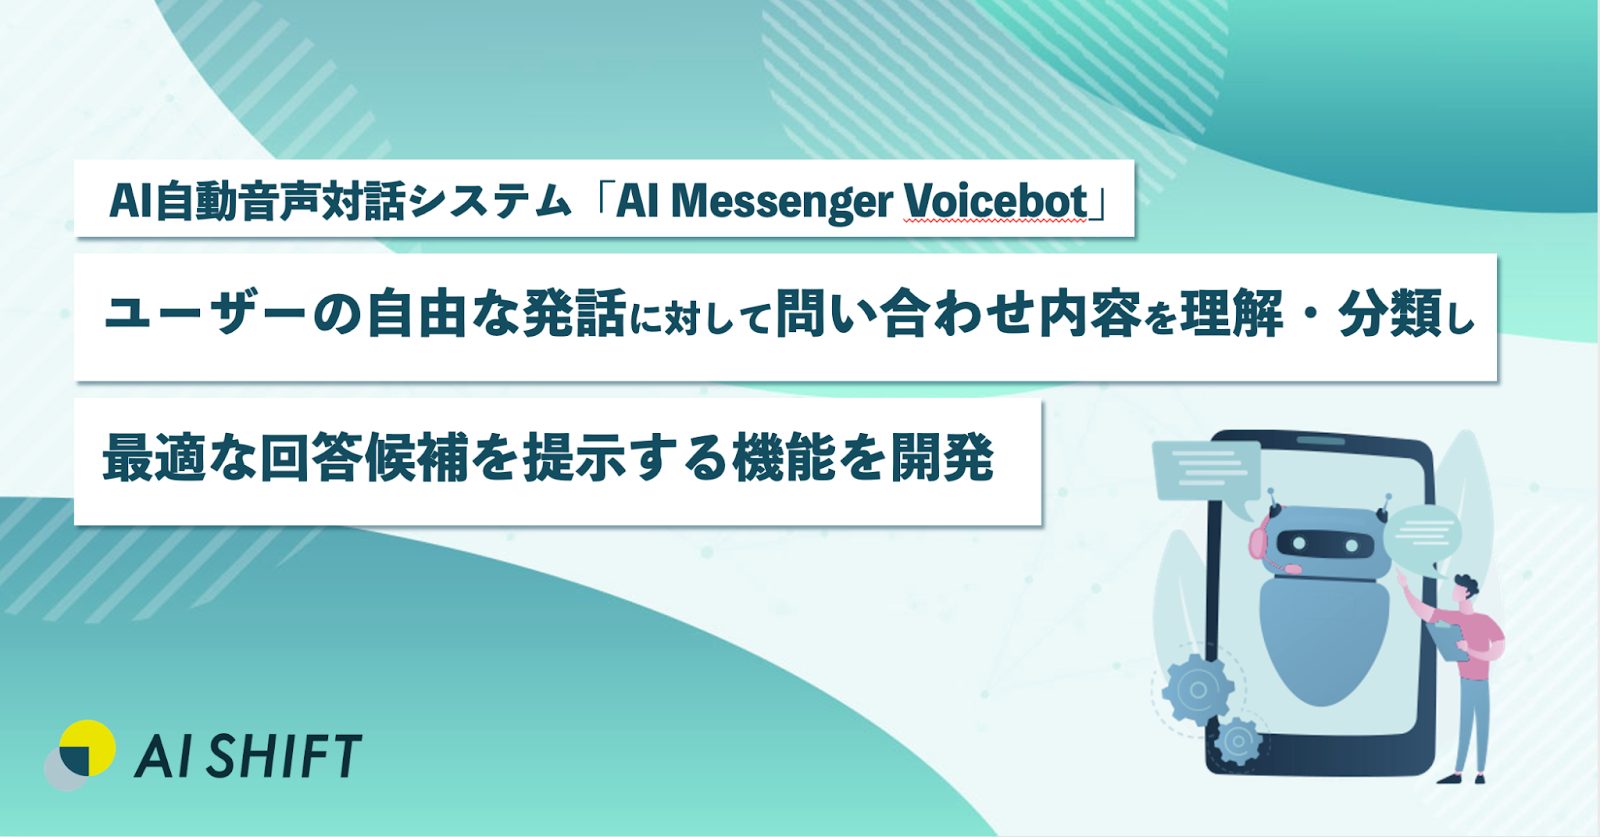 AI自動音声対話システム「AI Messenger Voicebot」にて、ユーザーの自由な発話に対して問い合わせ内容を理解・分類し、最適な回答候補を提示する機能を開発